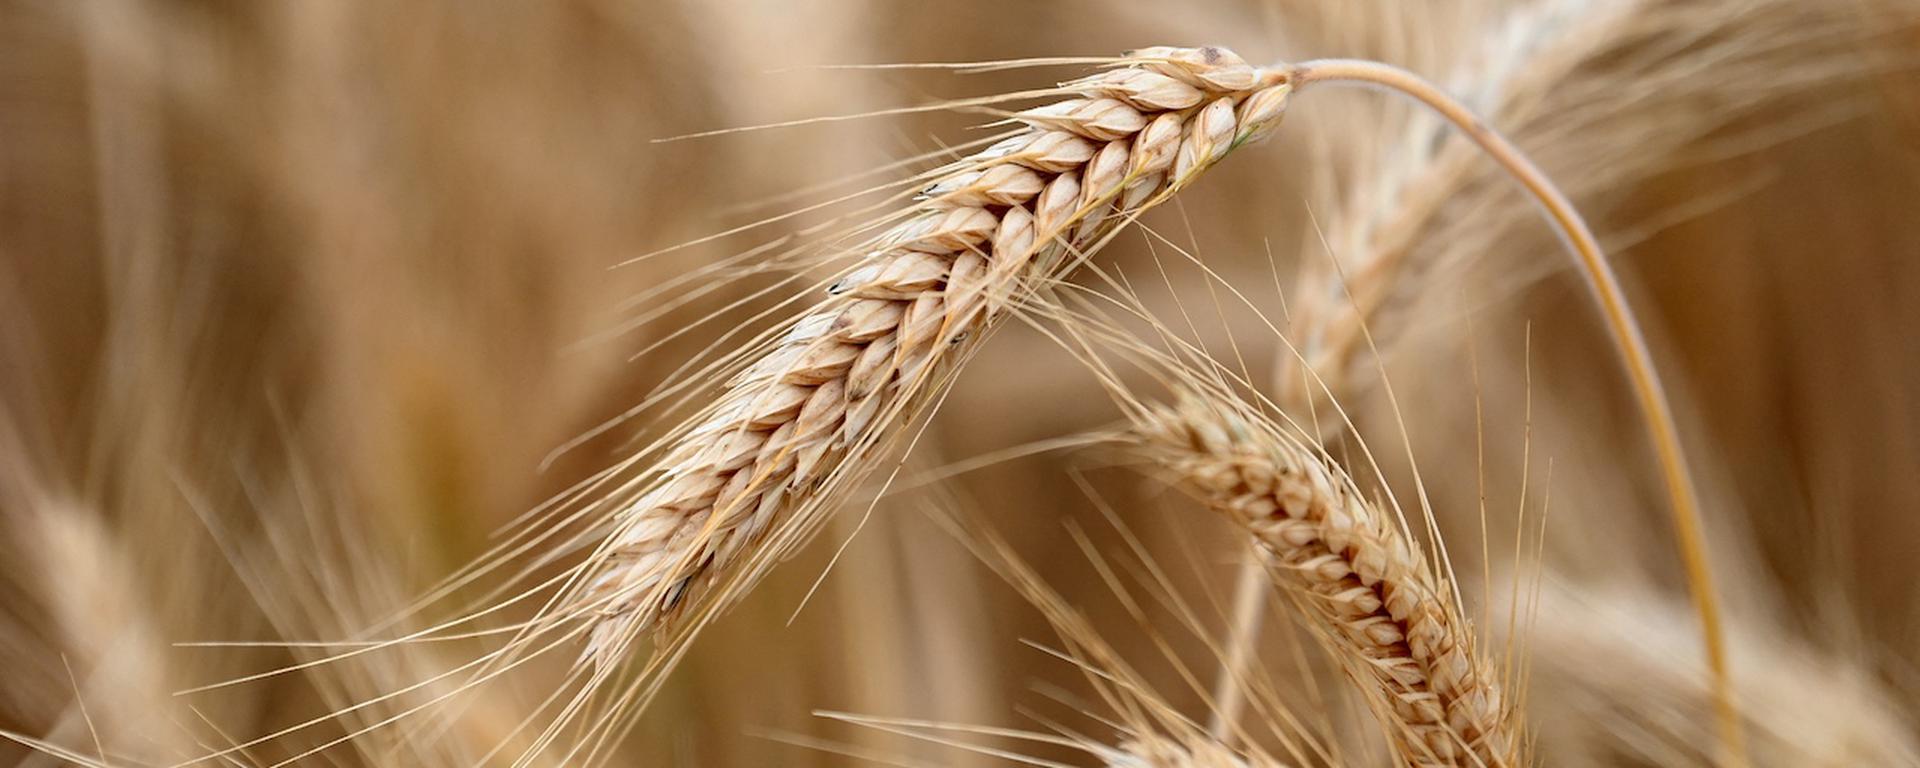 Hambruna global: ¿Qué países producen y consumen más cereales en el mundo?